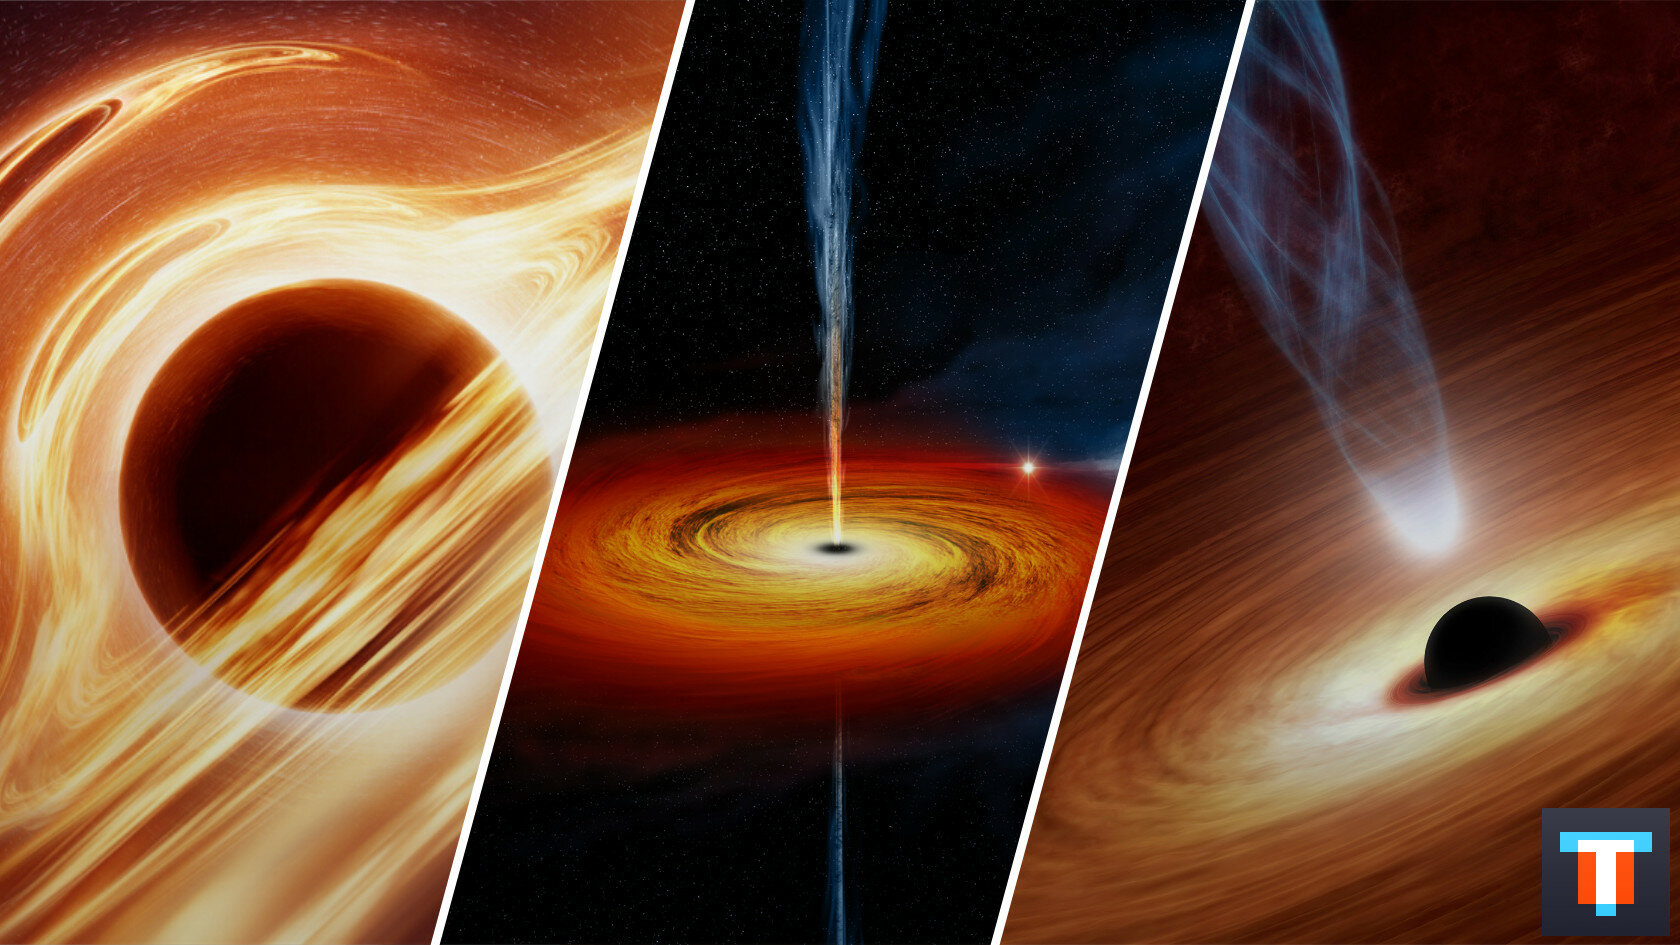 Что общего у черных дыр и спагетти: космические факты о них, открытые за последний год